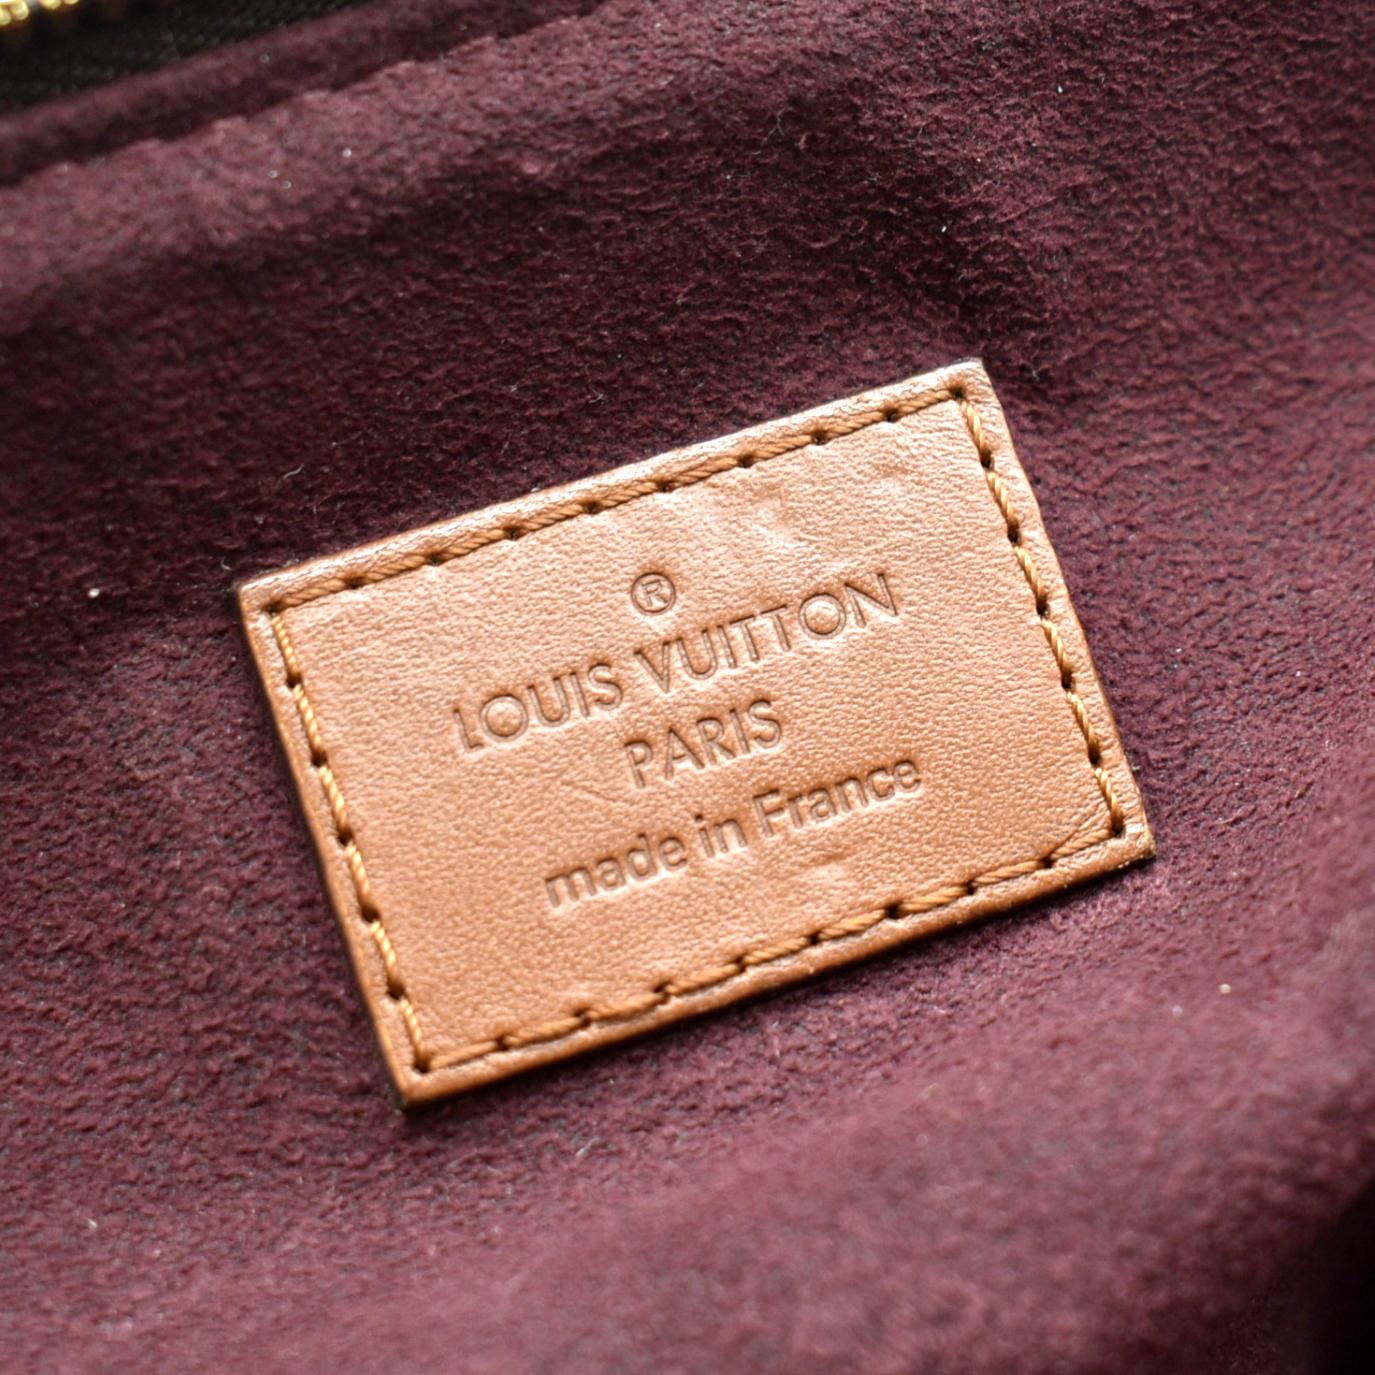 Louis Vuitton 2021 Damier Ebene Belmont PM w/ Pouch - Brown Totes, Handbags  - LOU647734